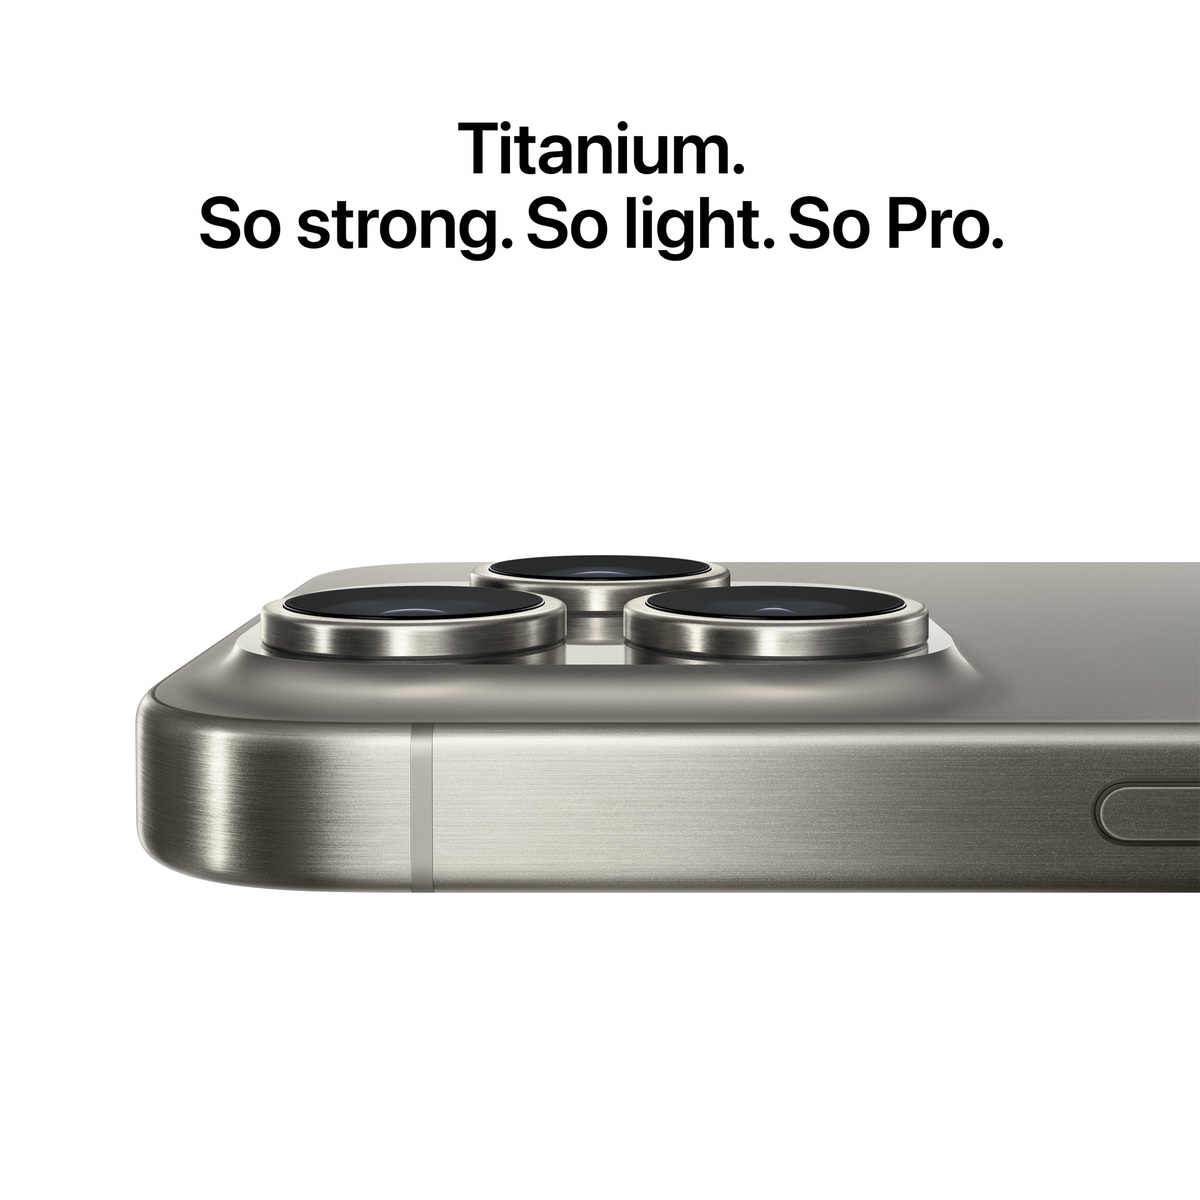 Apple iPhone15 Pro Max, 256 GB Storage, White Titanium